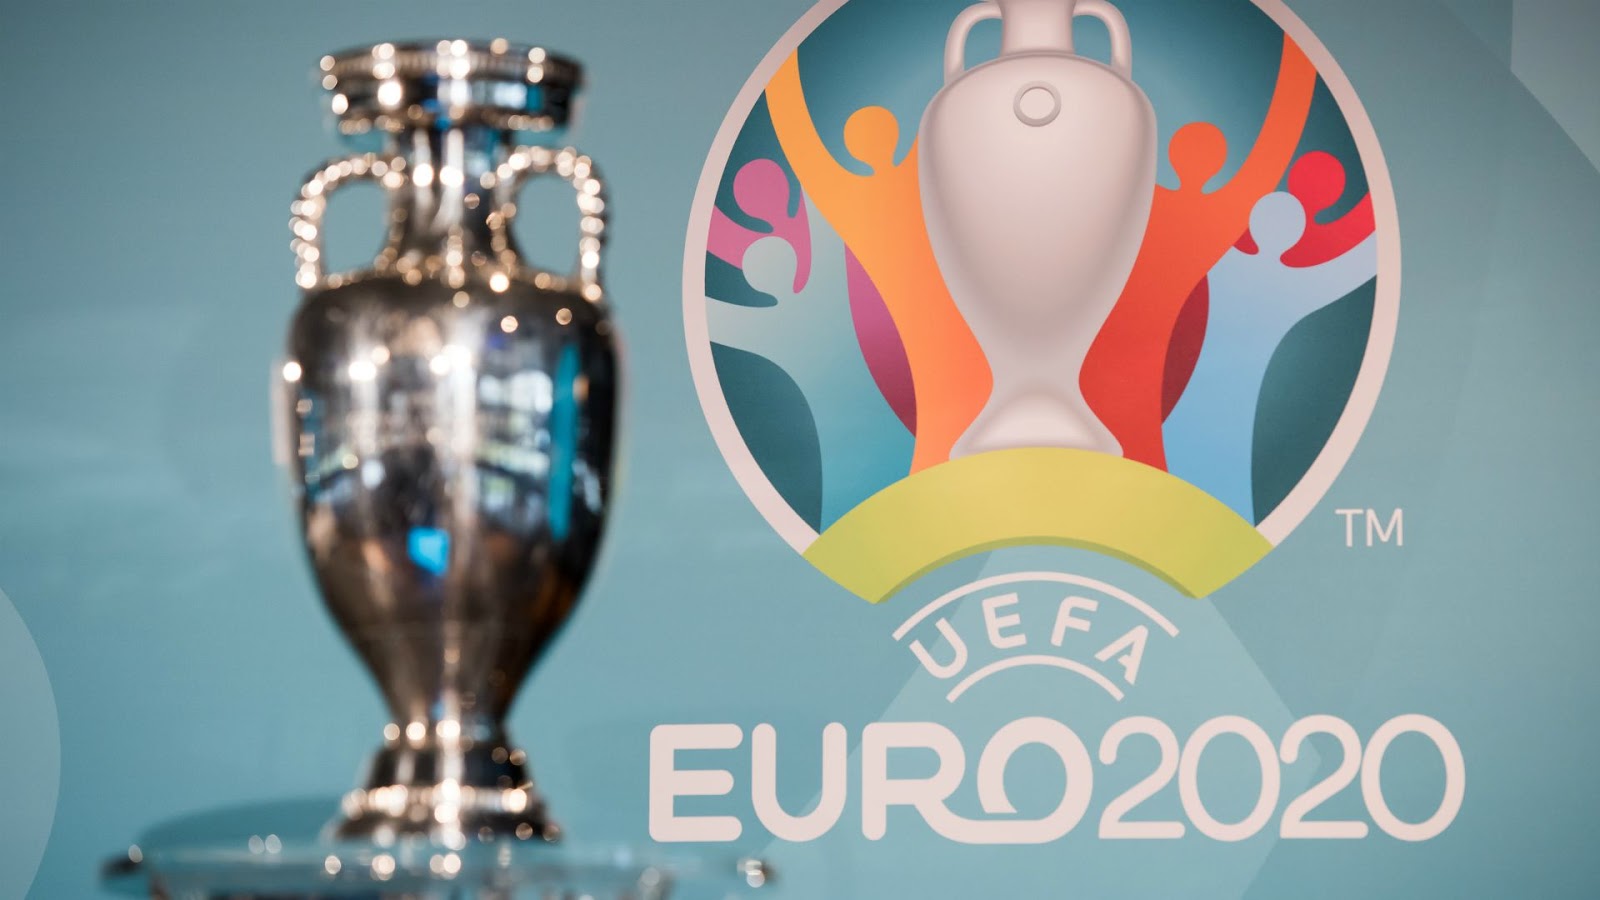  Trong năm đầu tiên của EURO, có tổng cộng 17 đội tham gia